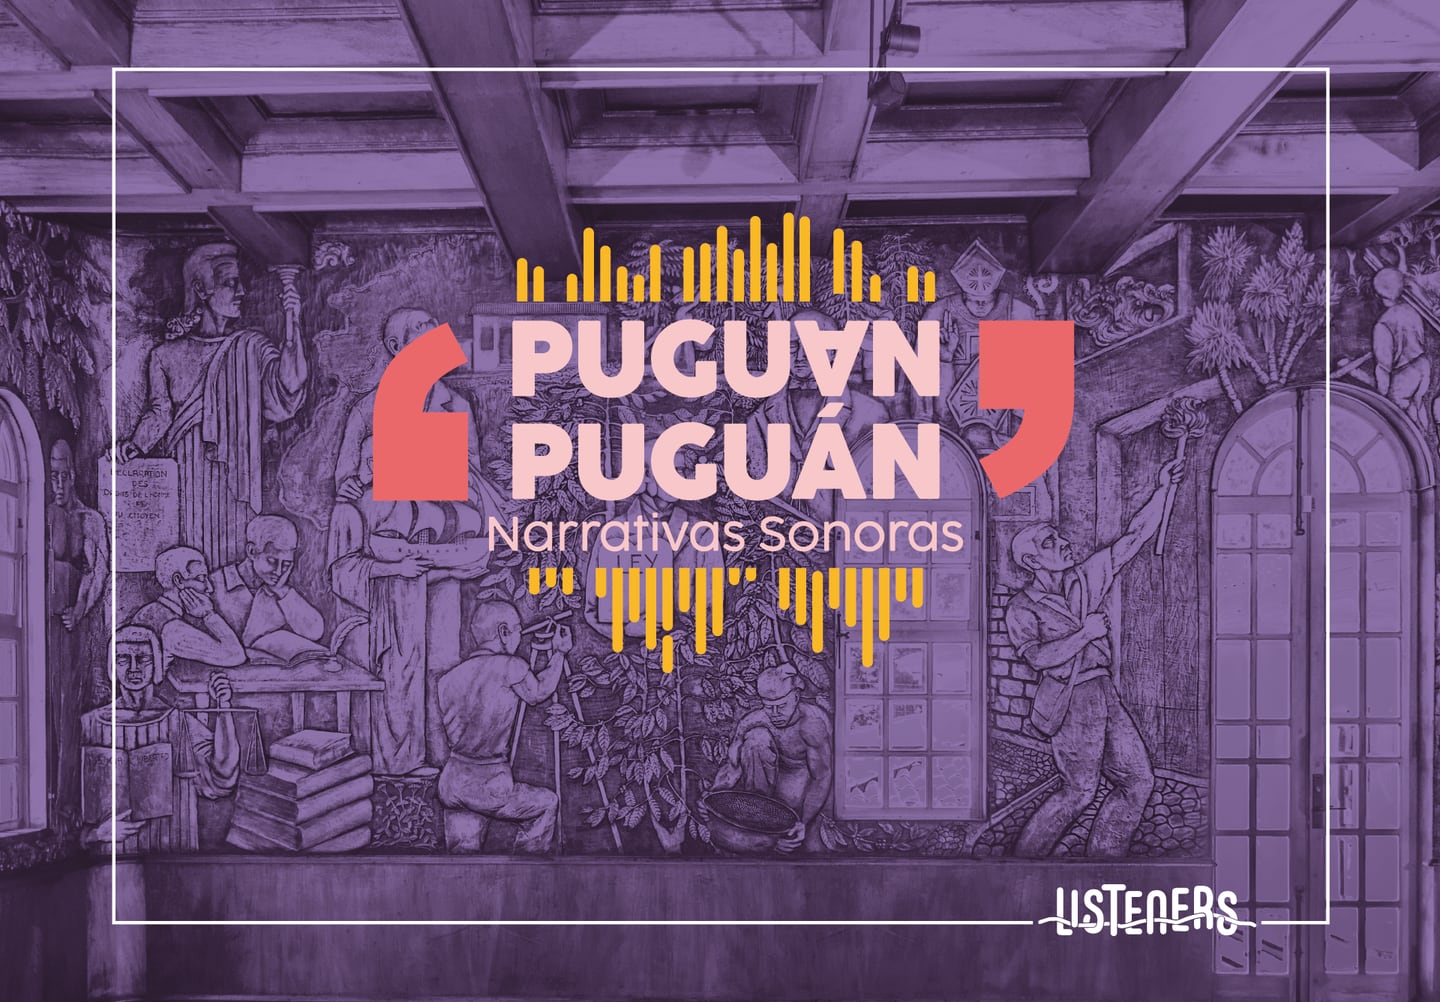 Puguan Puguan: Narrativas ofrece una experiencia única en un recorrido que une historia y creatividad.